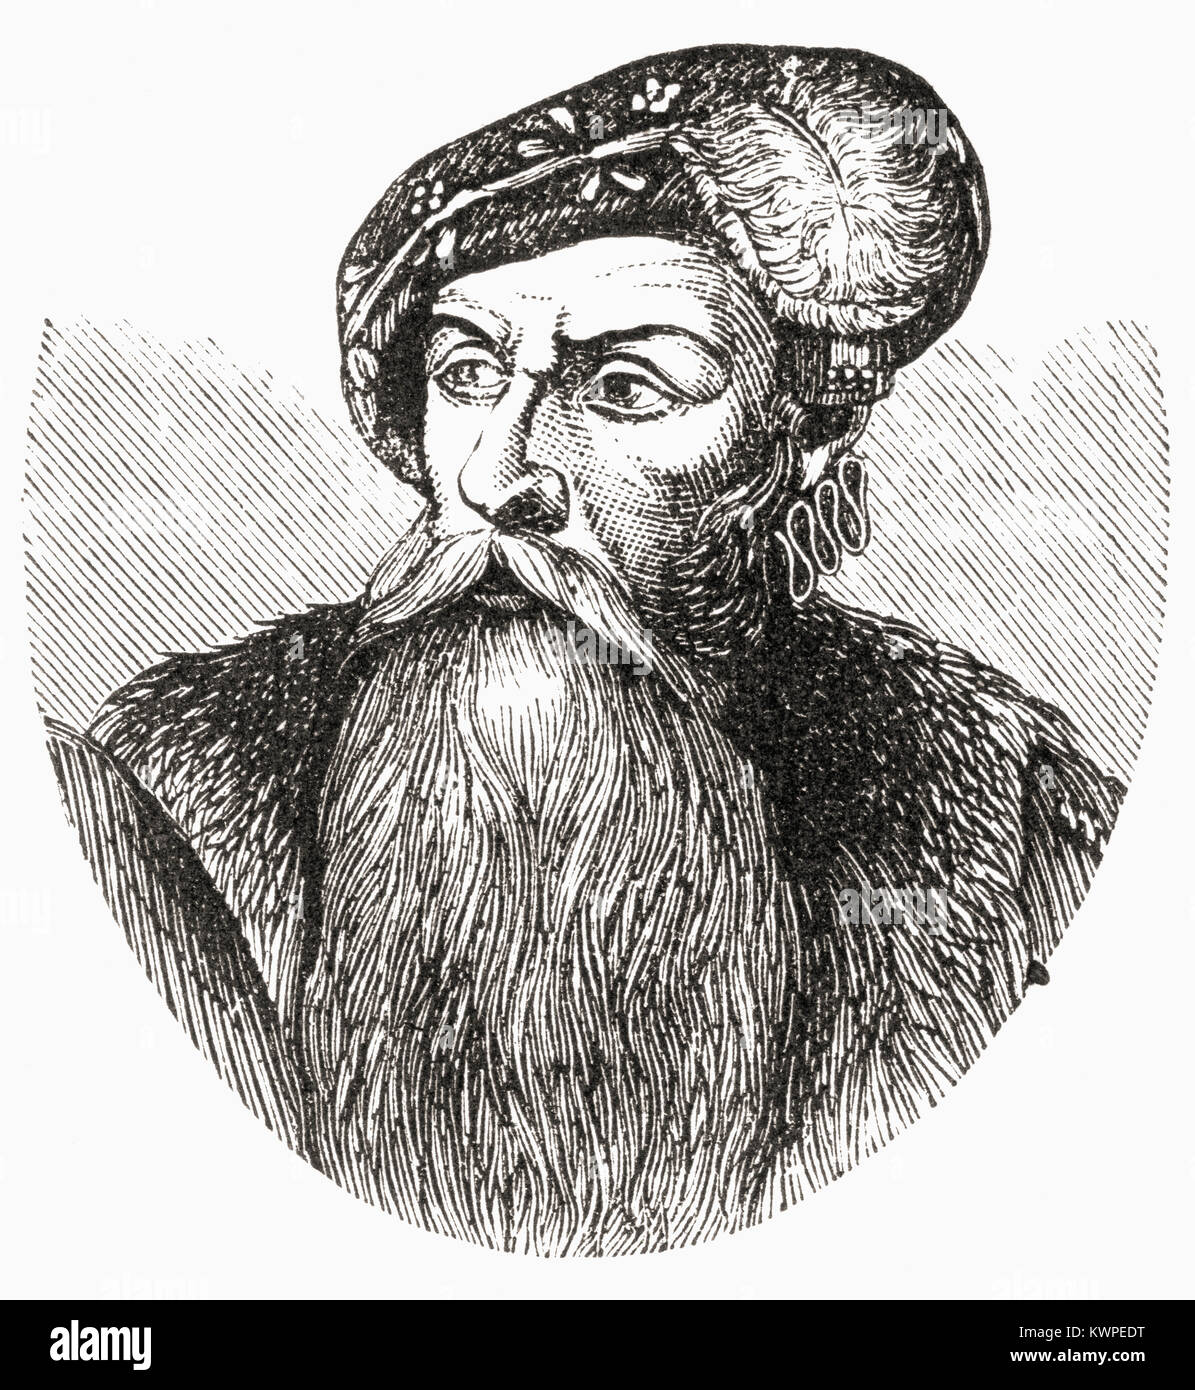 Je Gustav, Gustav Eriksson de la naissance noble famille Vasa et connu plus tard sous le nom de Gustav Vasa, 1496 - 1560. Roi de Suède. De Ward et verrouiller l'illustre l'histoire du monde, publié c.1882. Banque D'Images